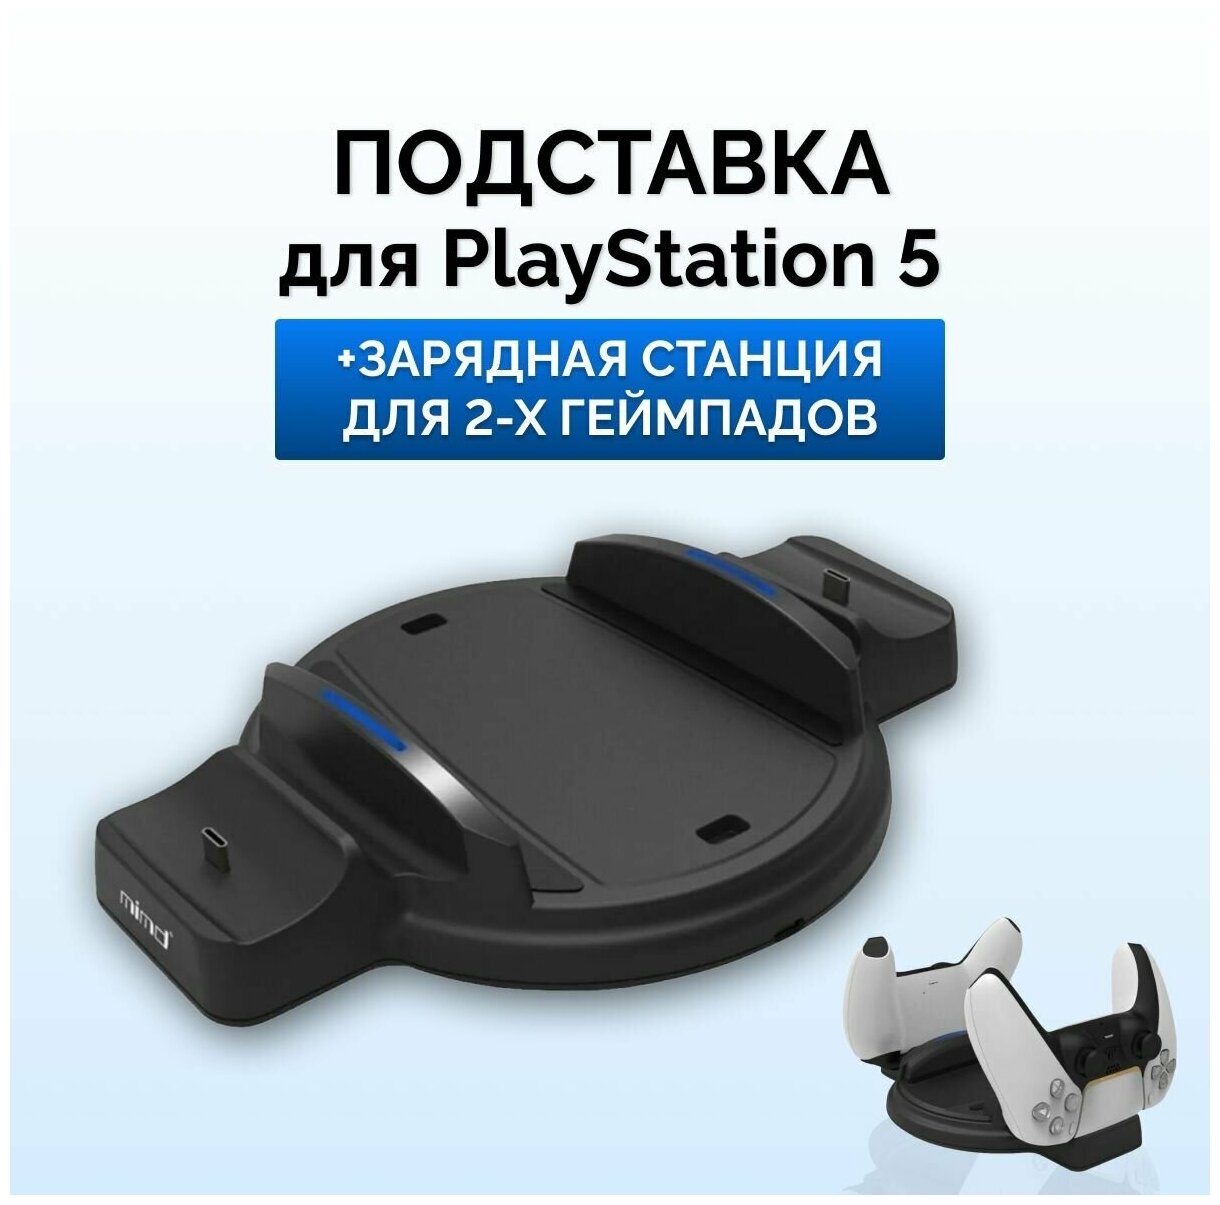 Зарядная станция для двух геймпадов Playstation 5 с подставкой для Playstation 5